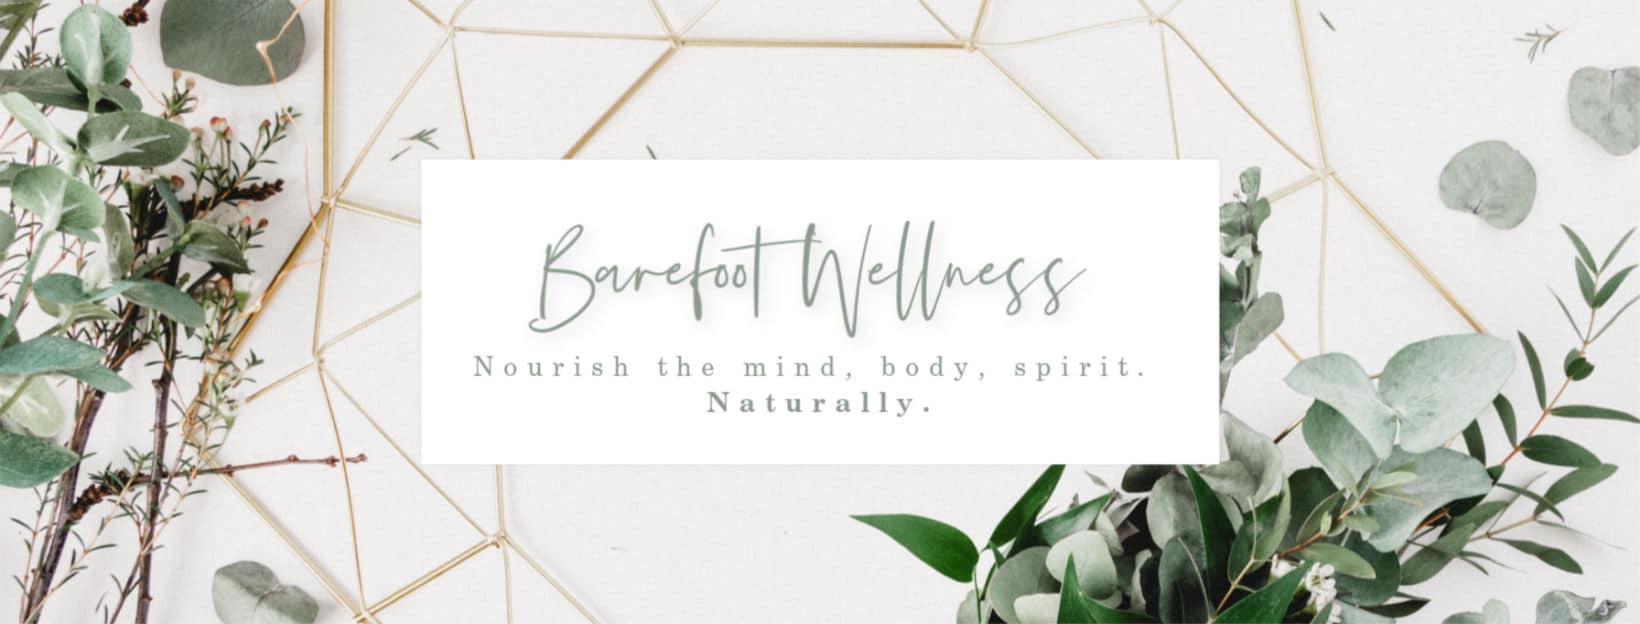 Barefoot Wellness